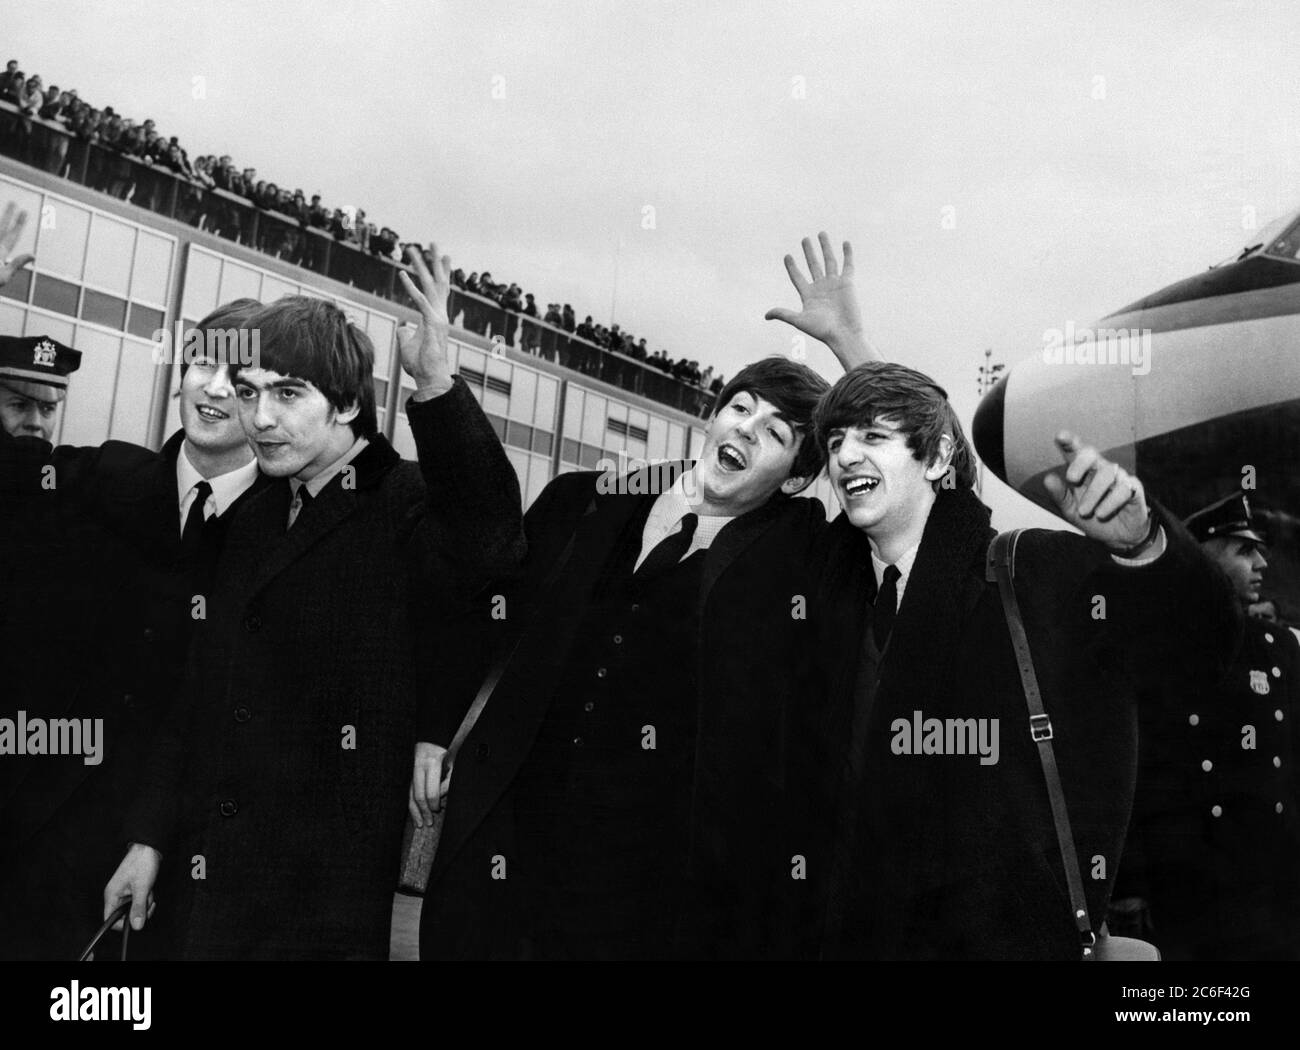 Les Beatles : John Lennon, Paul McCartney, George Harrison et Ringo Starr Banque D'Images